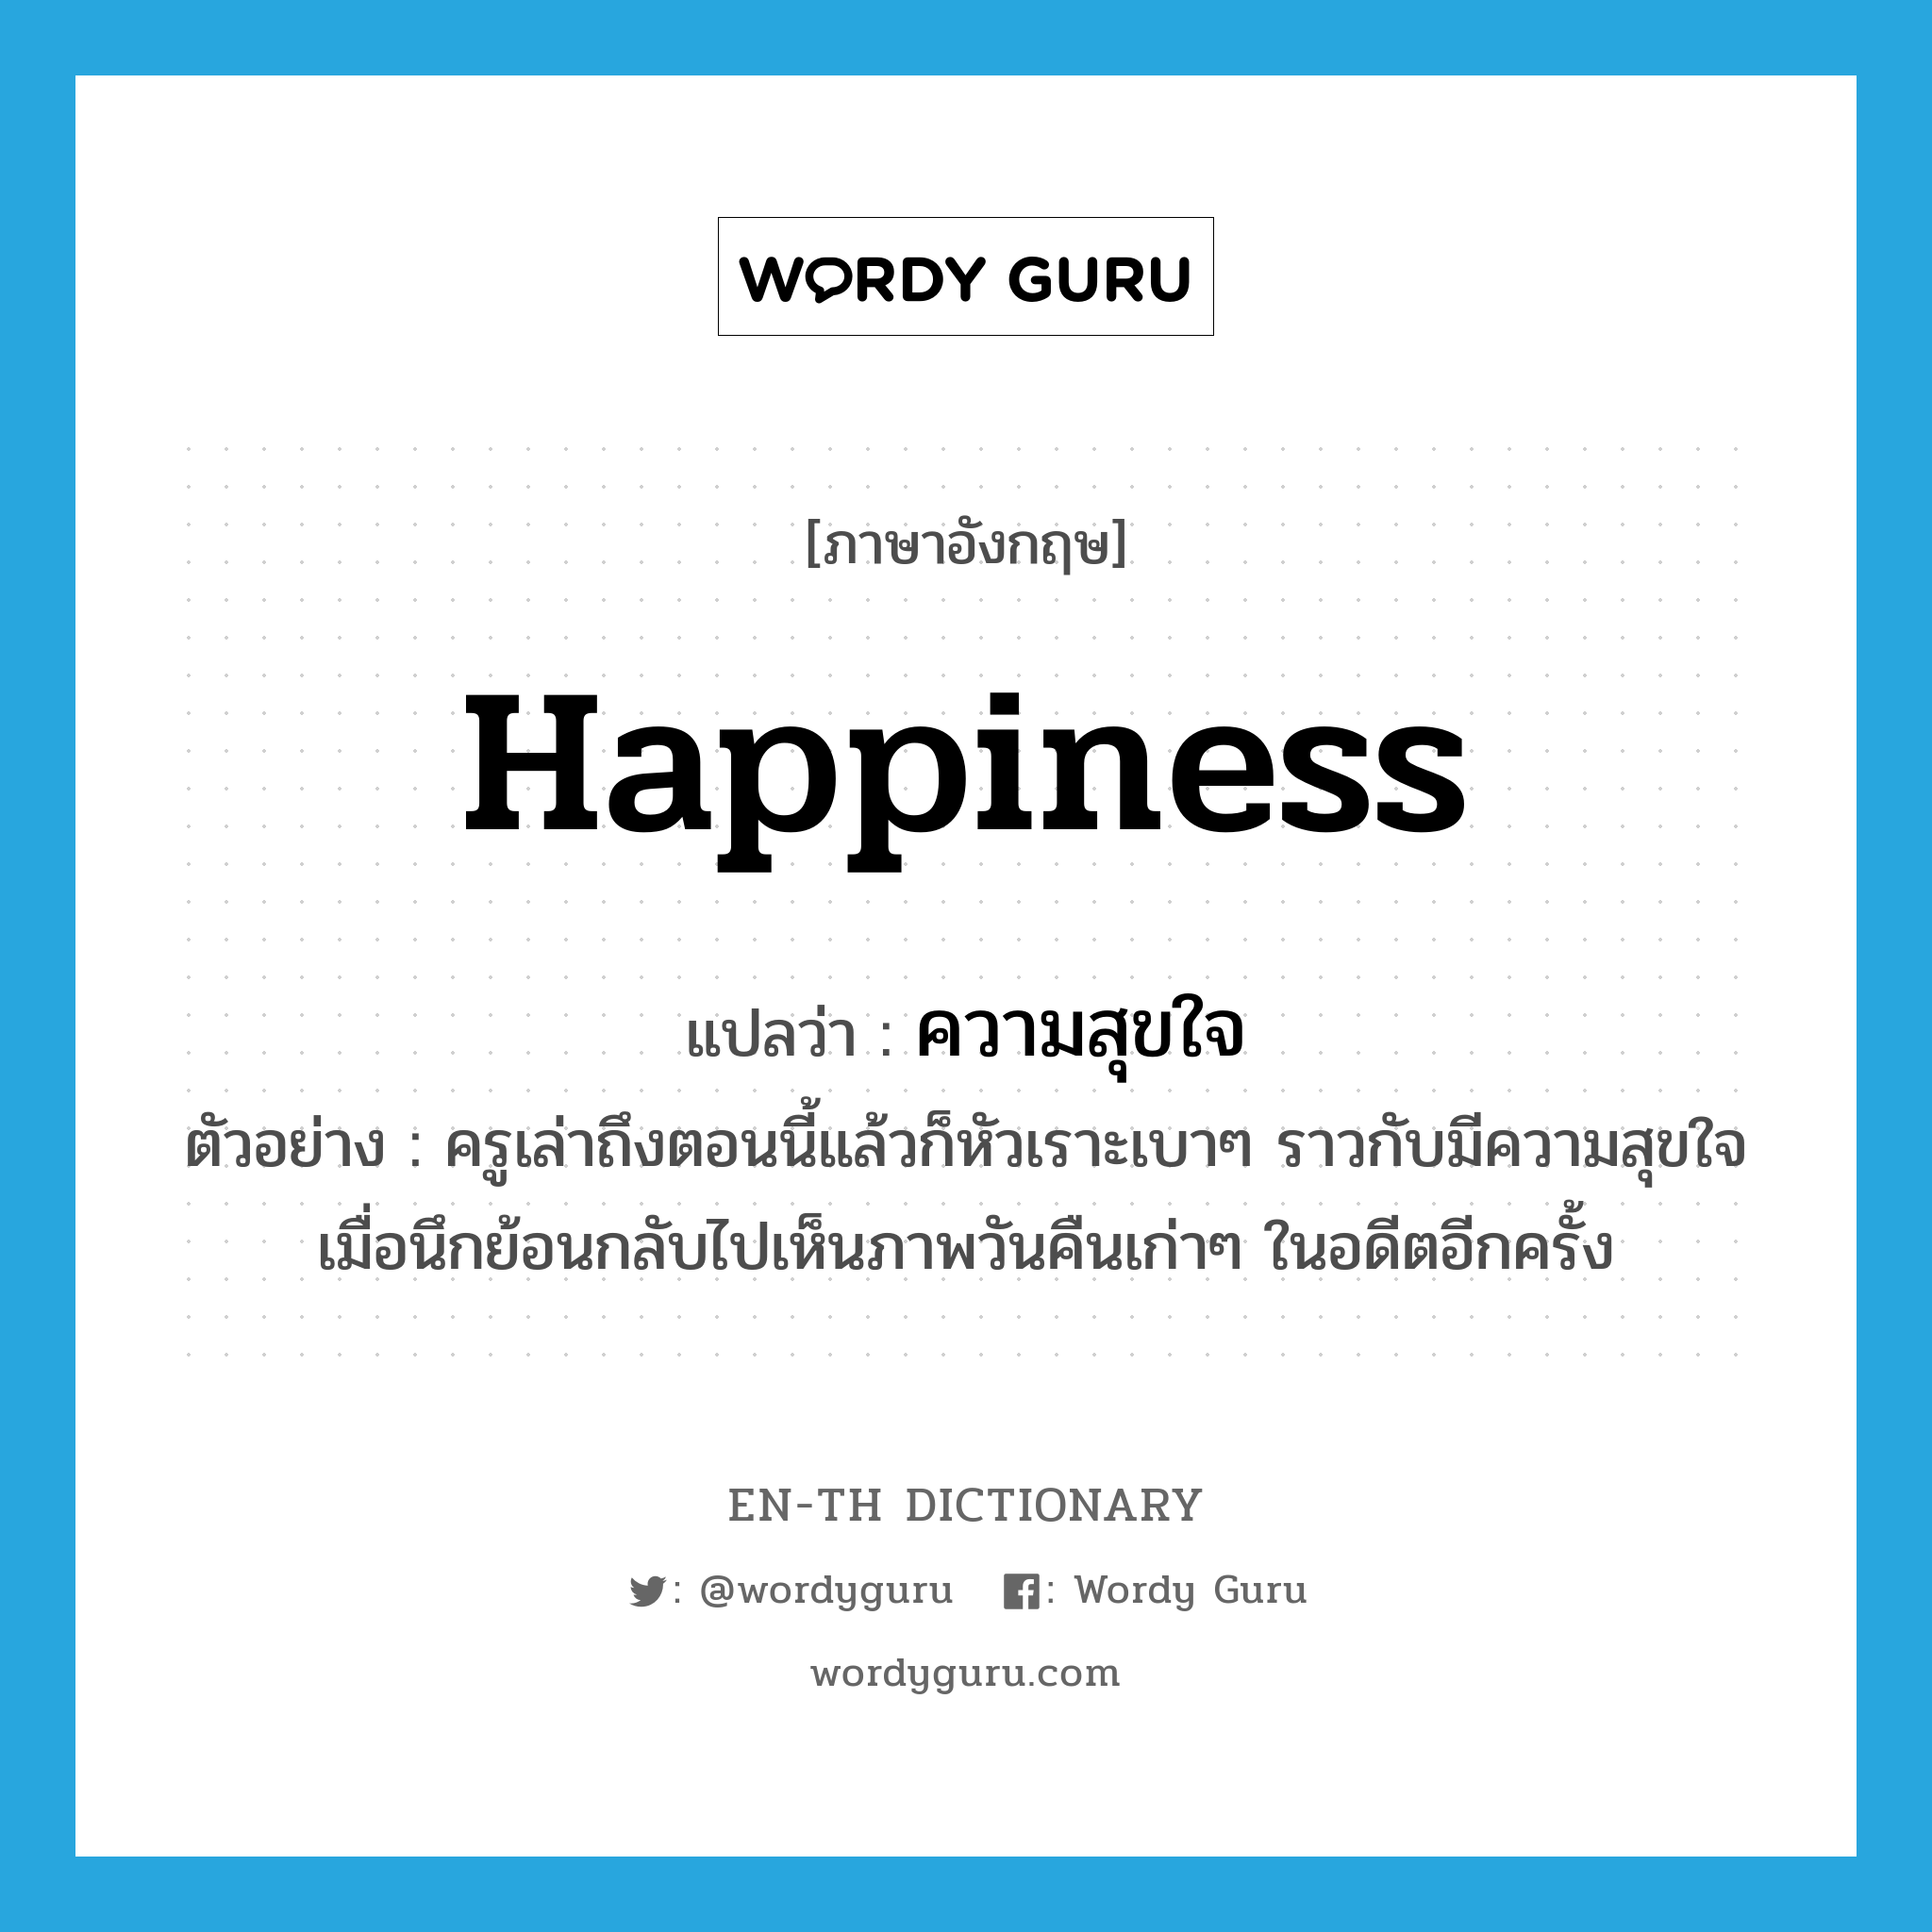 ความสุขใจ ภาษาอังกฤษ?, คำศัพท์ภาษาอังกฤษ ความสุขใจ แปลว่า happiness ประเภท N ตัวอย่าง ครูเล่าถึงตอนนี้แล้วก็หัวเราะเบาๆ ราวกับมีความสุขใจเมื่อนึกย้อนกลับไปเห็นภาพวันคืนเก่าๆ ในอดีตอีกครั้ง หมวด N